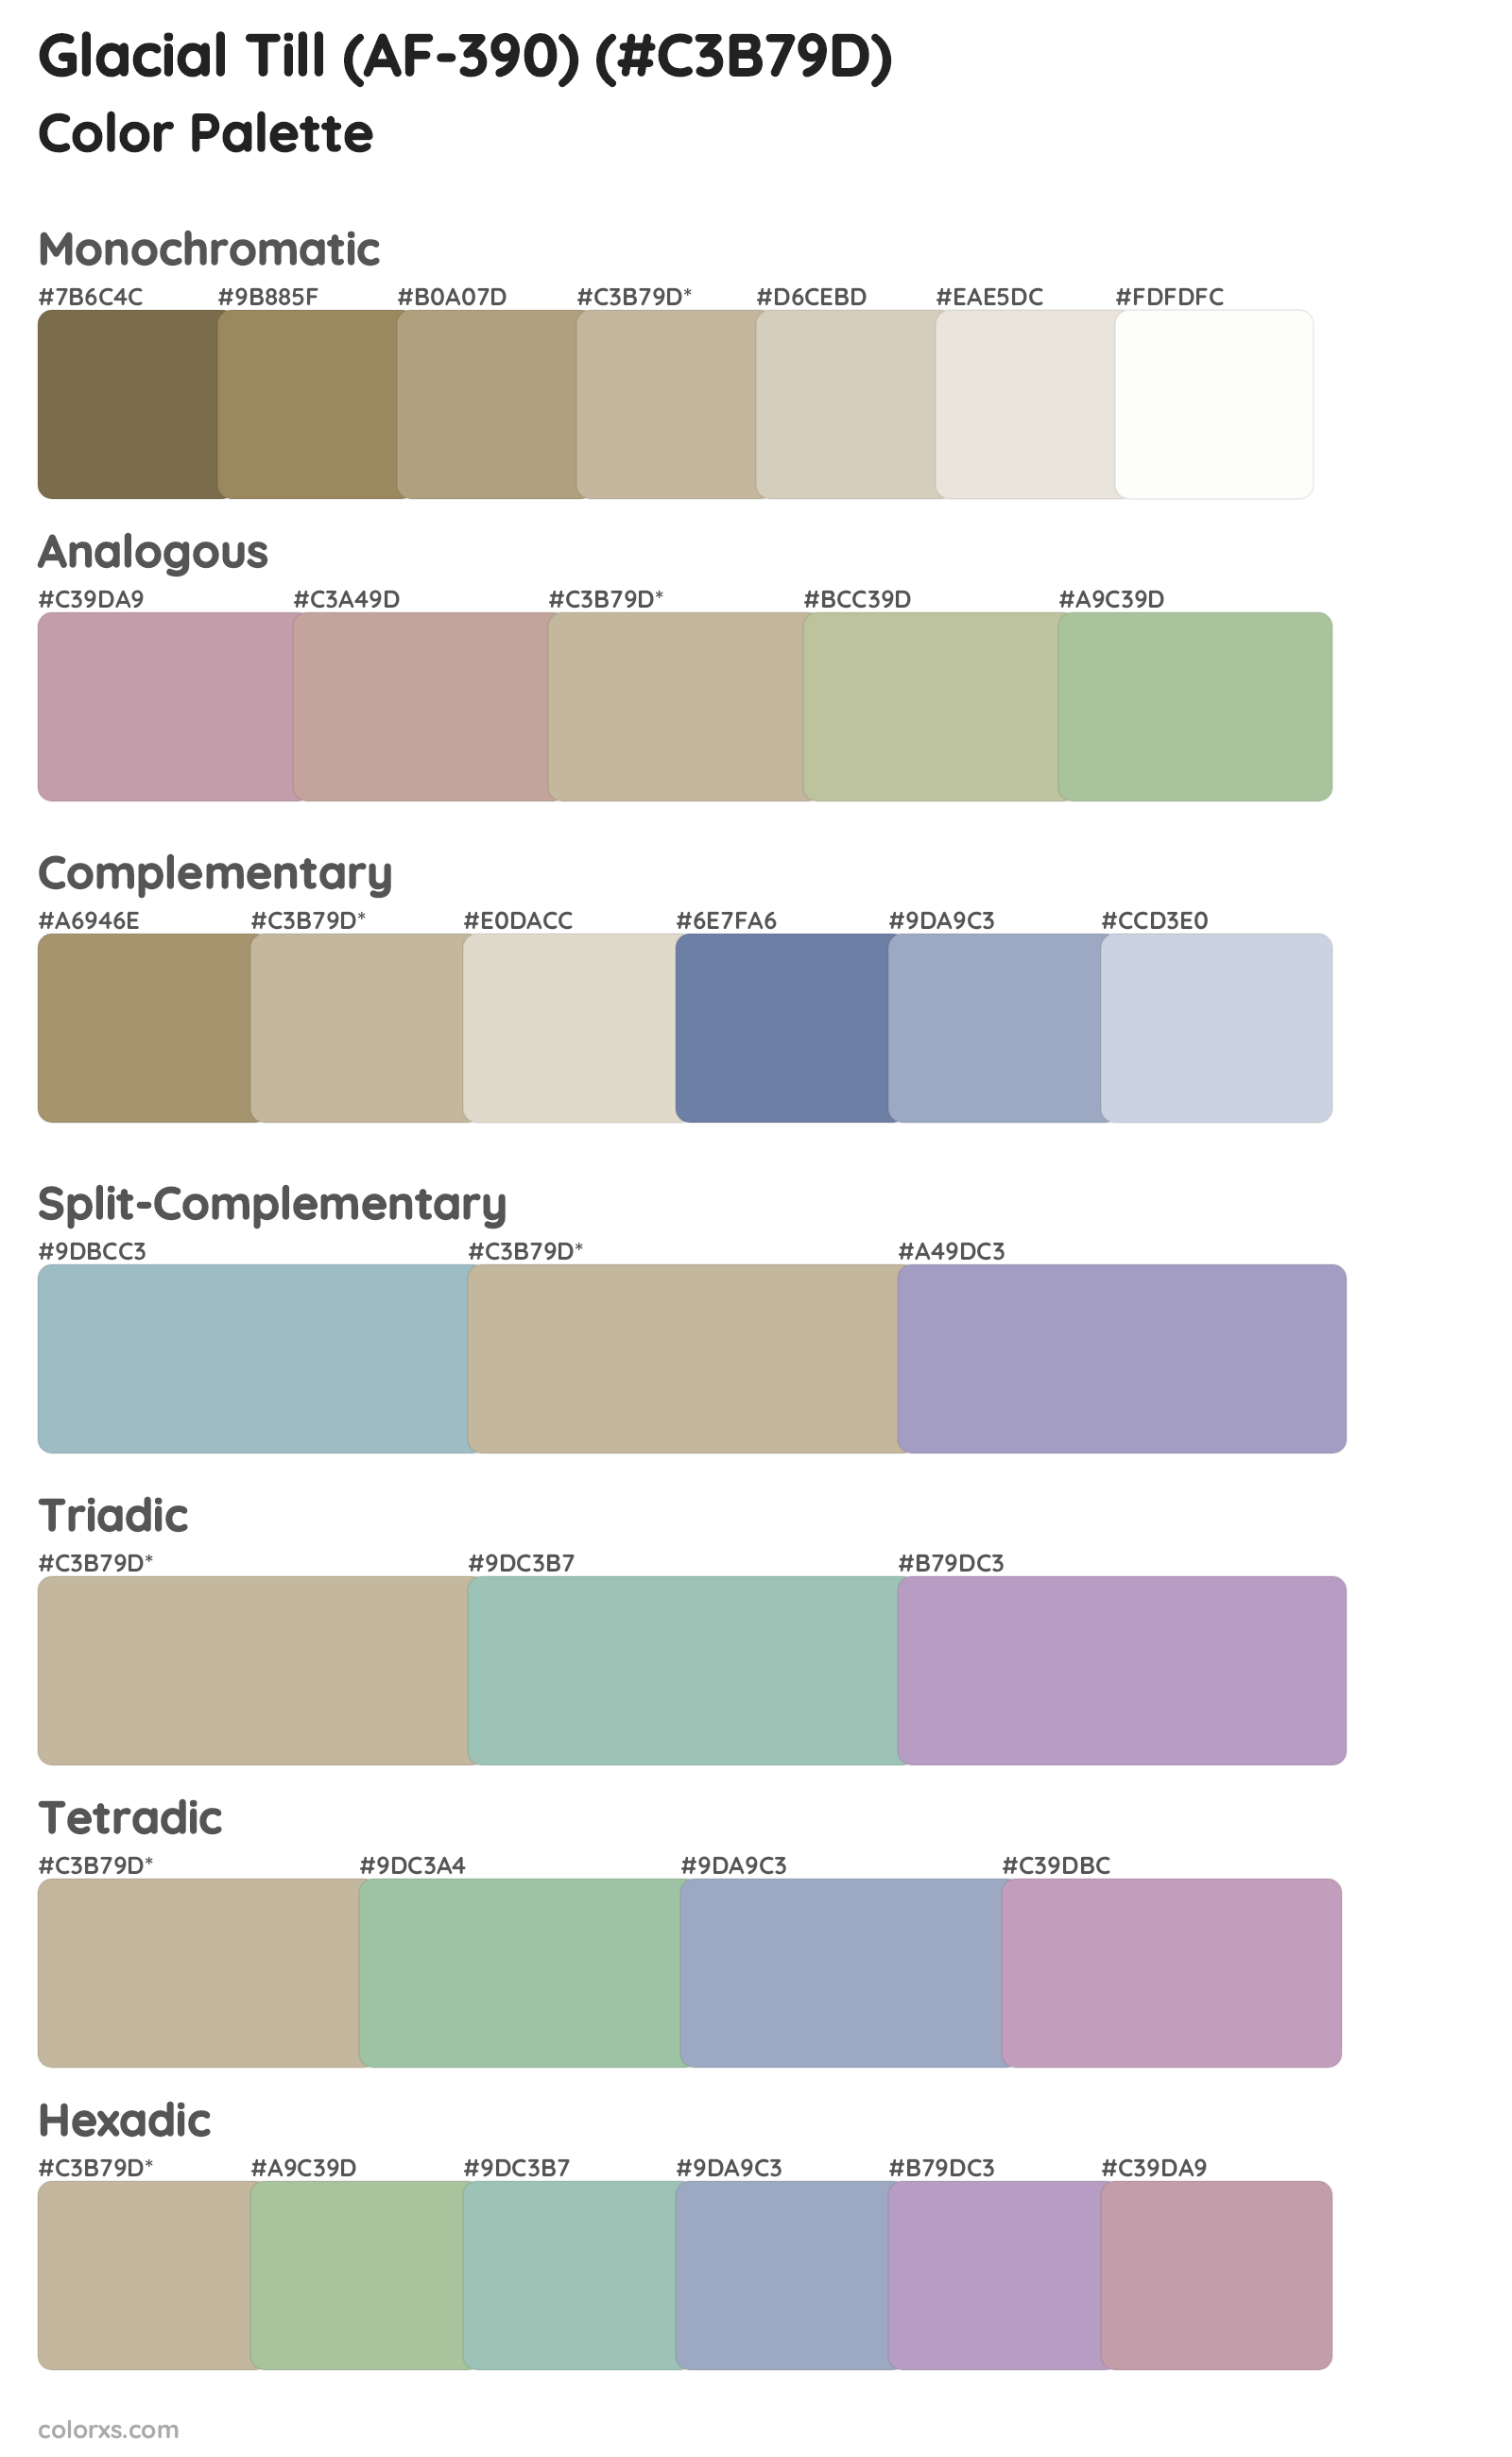 Glacial Till (AF-390) Color Scheme Palettes